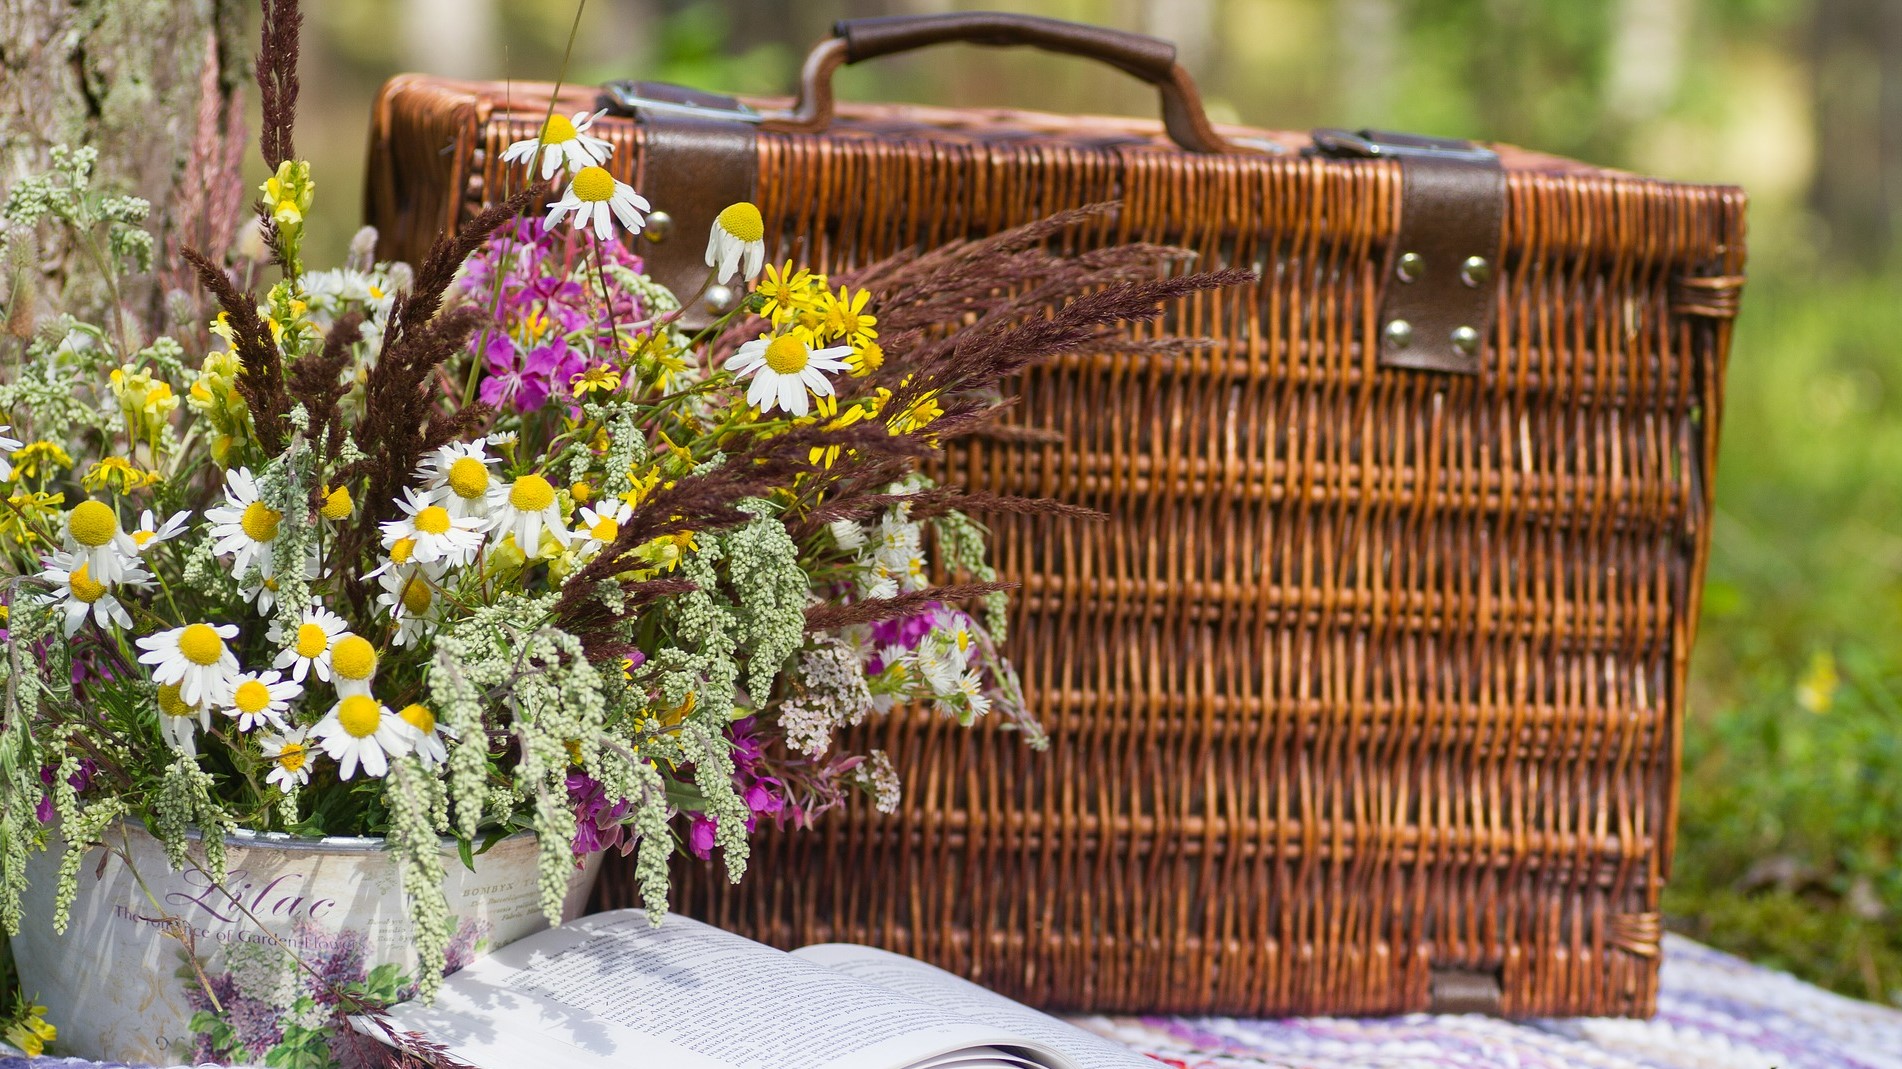 Picknick-korg med blommor.